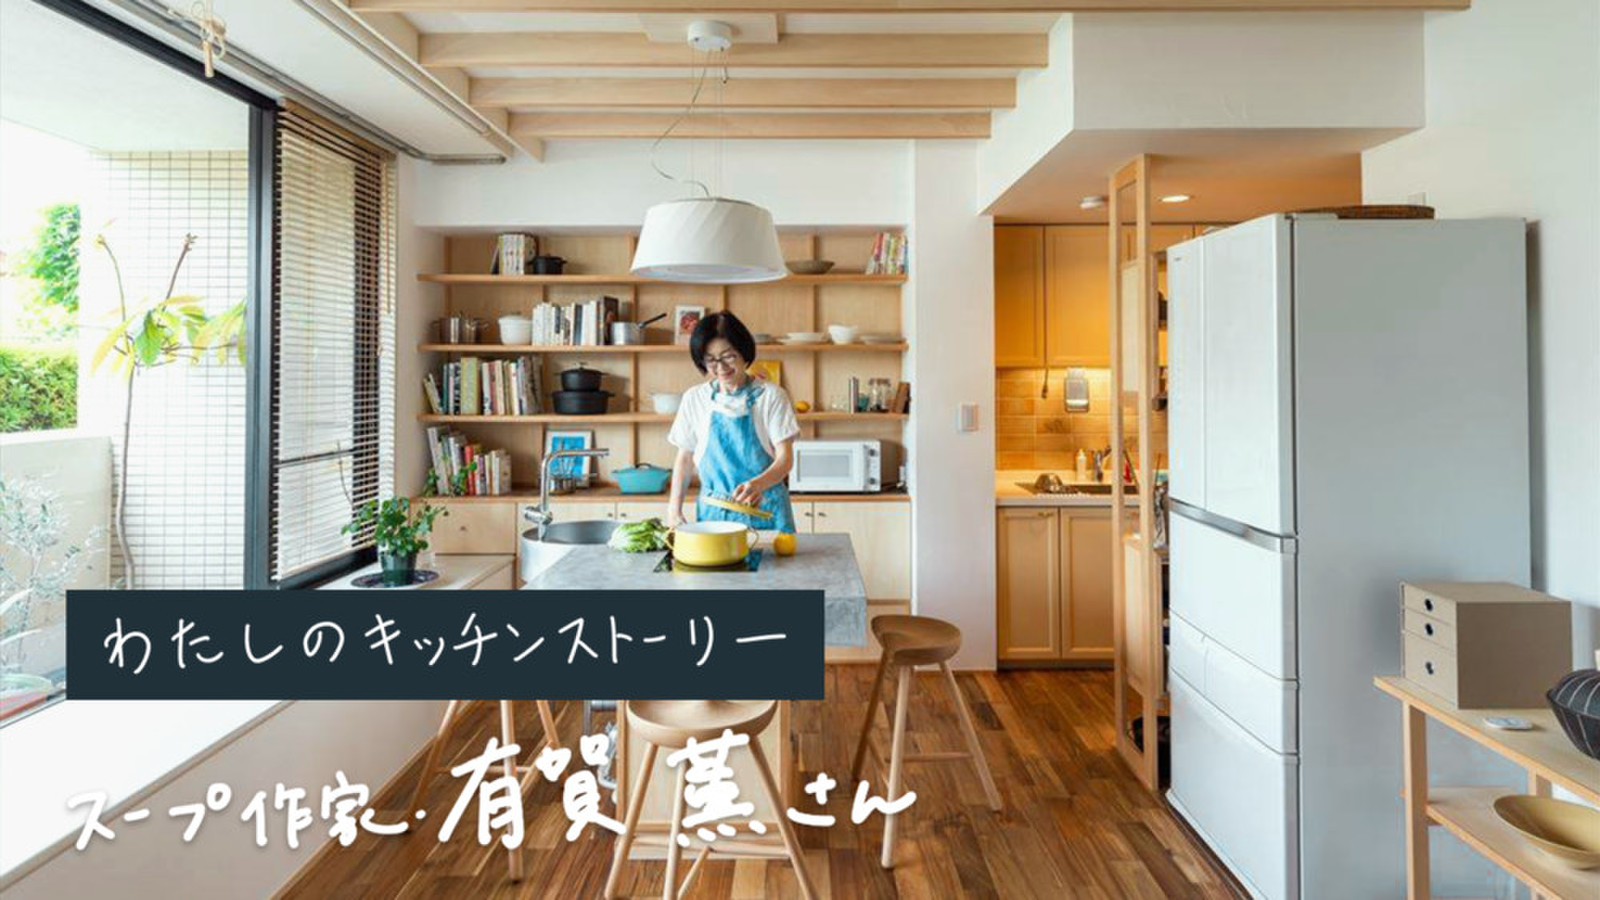 スープ作家・有賀薫さんが考える。暮らしにフィットする、新しいキッチンのかたち